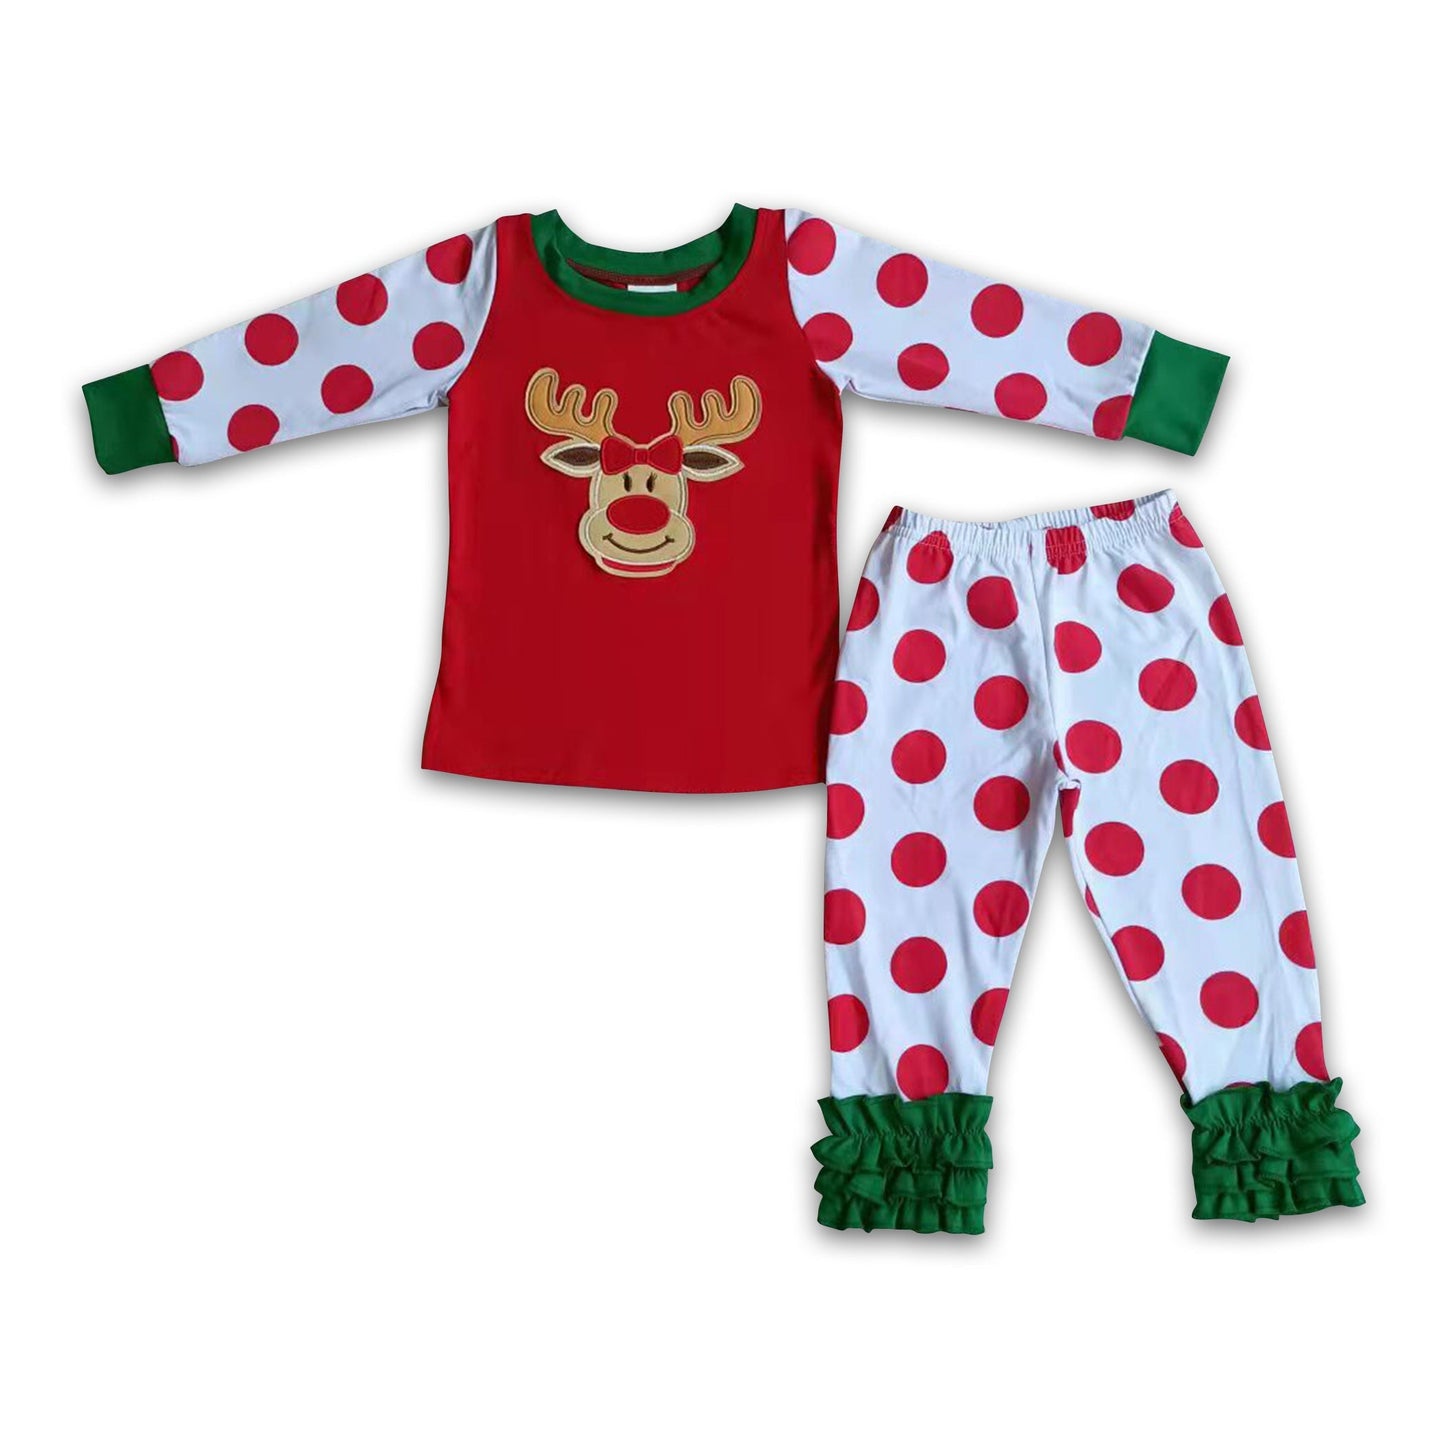 Reindeer embroidery polka dots cotton Christmas pajamas